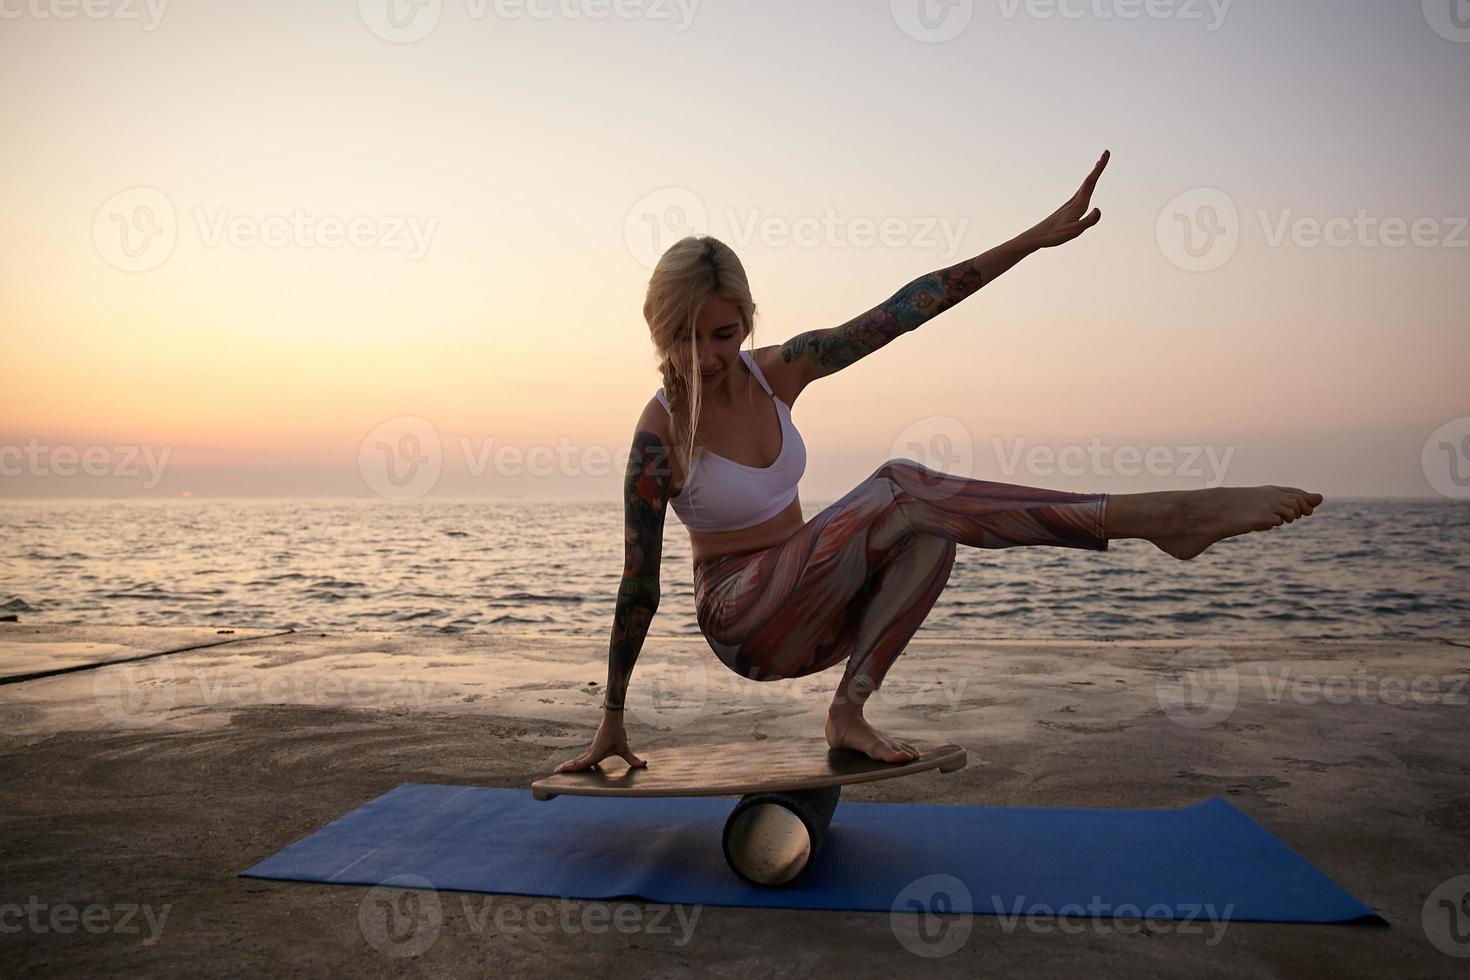 buitenopname van jonge sportieve getatoeëerde vrouw met casual kapsel die haar evenwicht houdt op de sportuitrusting, poseren aan de kust tijdens zonsopgang, sportieve kleding dragen foto